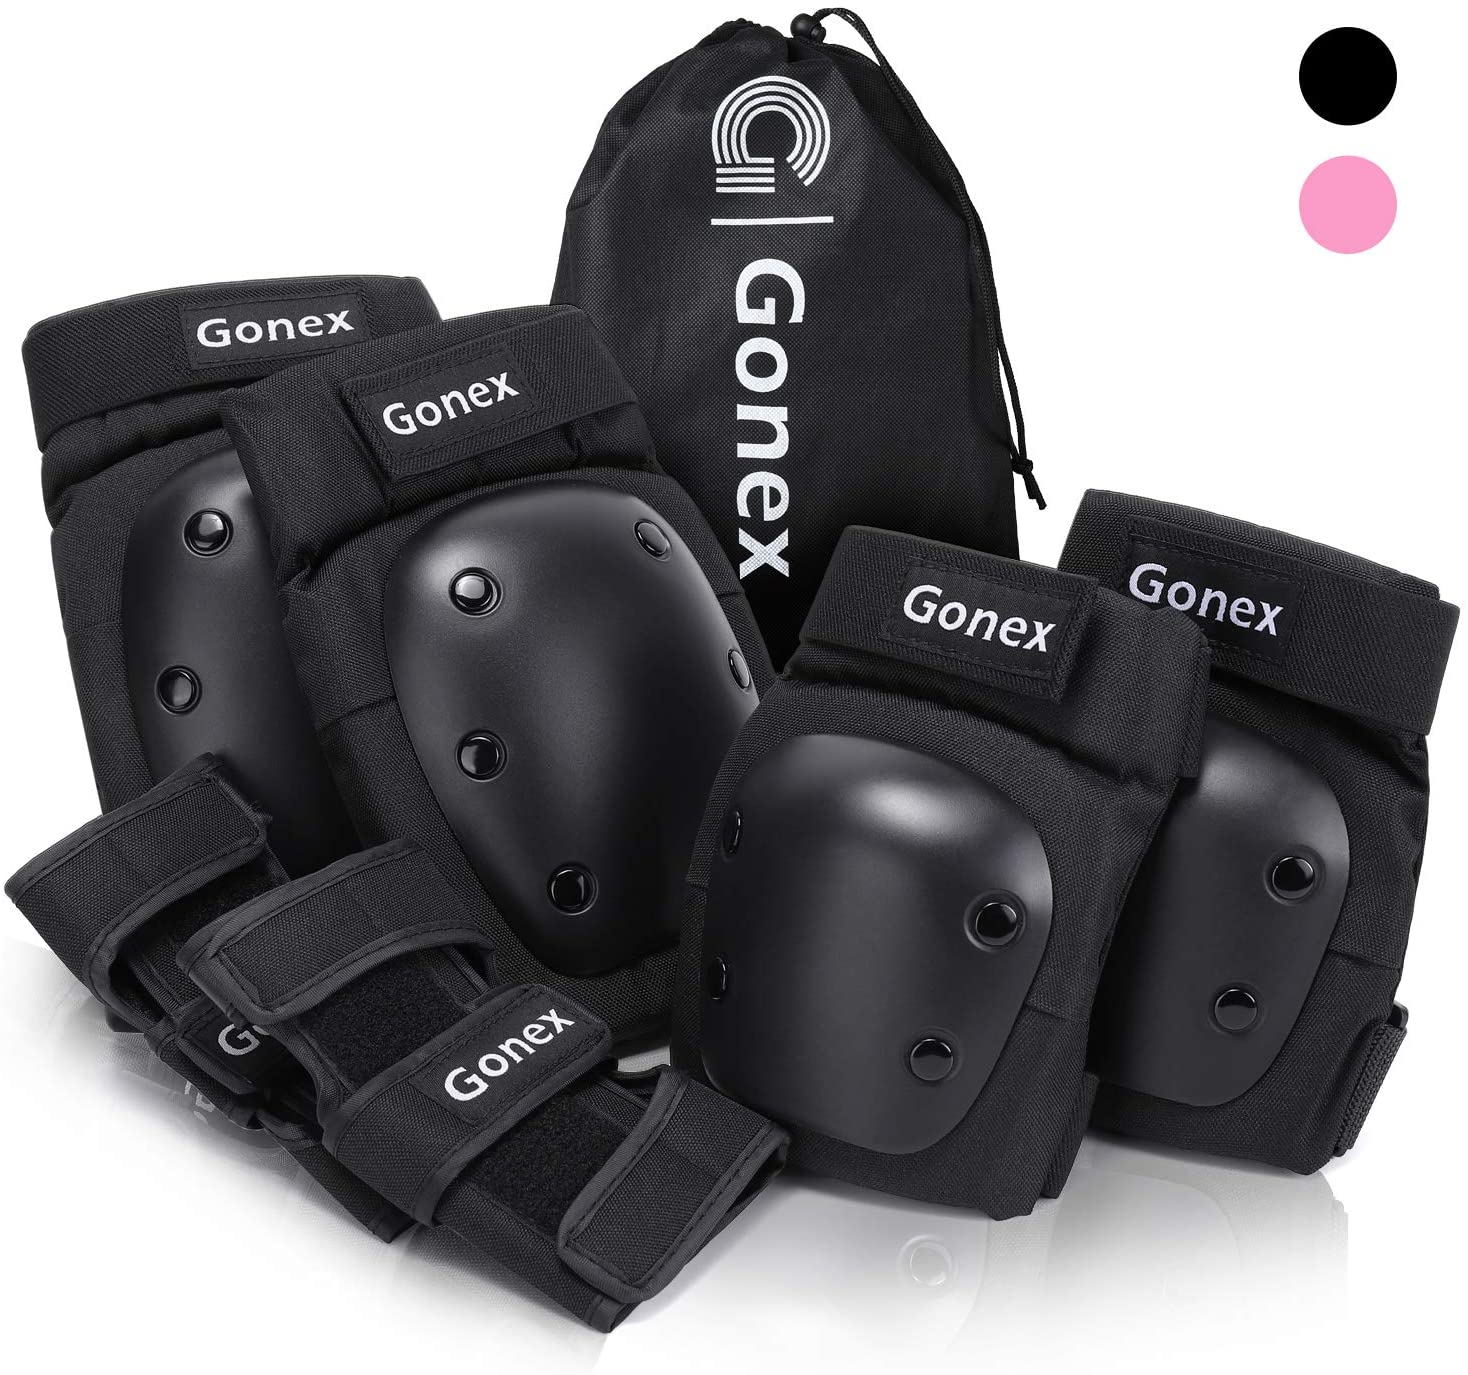 Bild zu Gonex Protektoren Set mit Knies-, Ellenbogen- und Handgelenkschoner für 19,99€